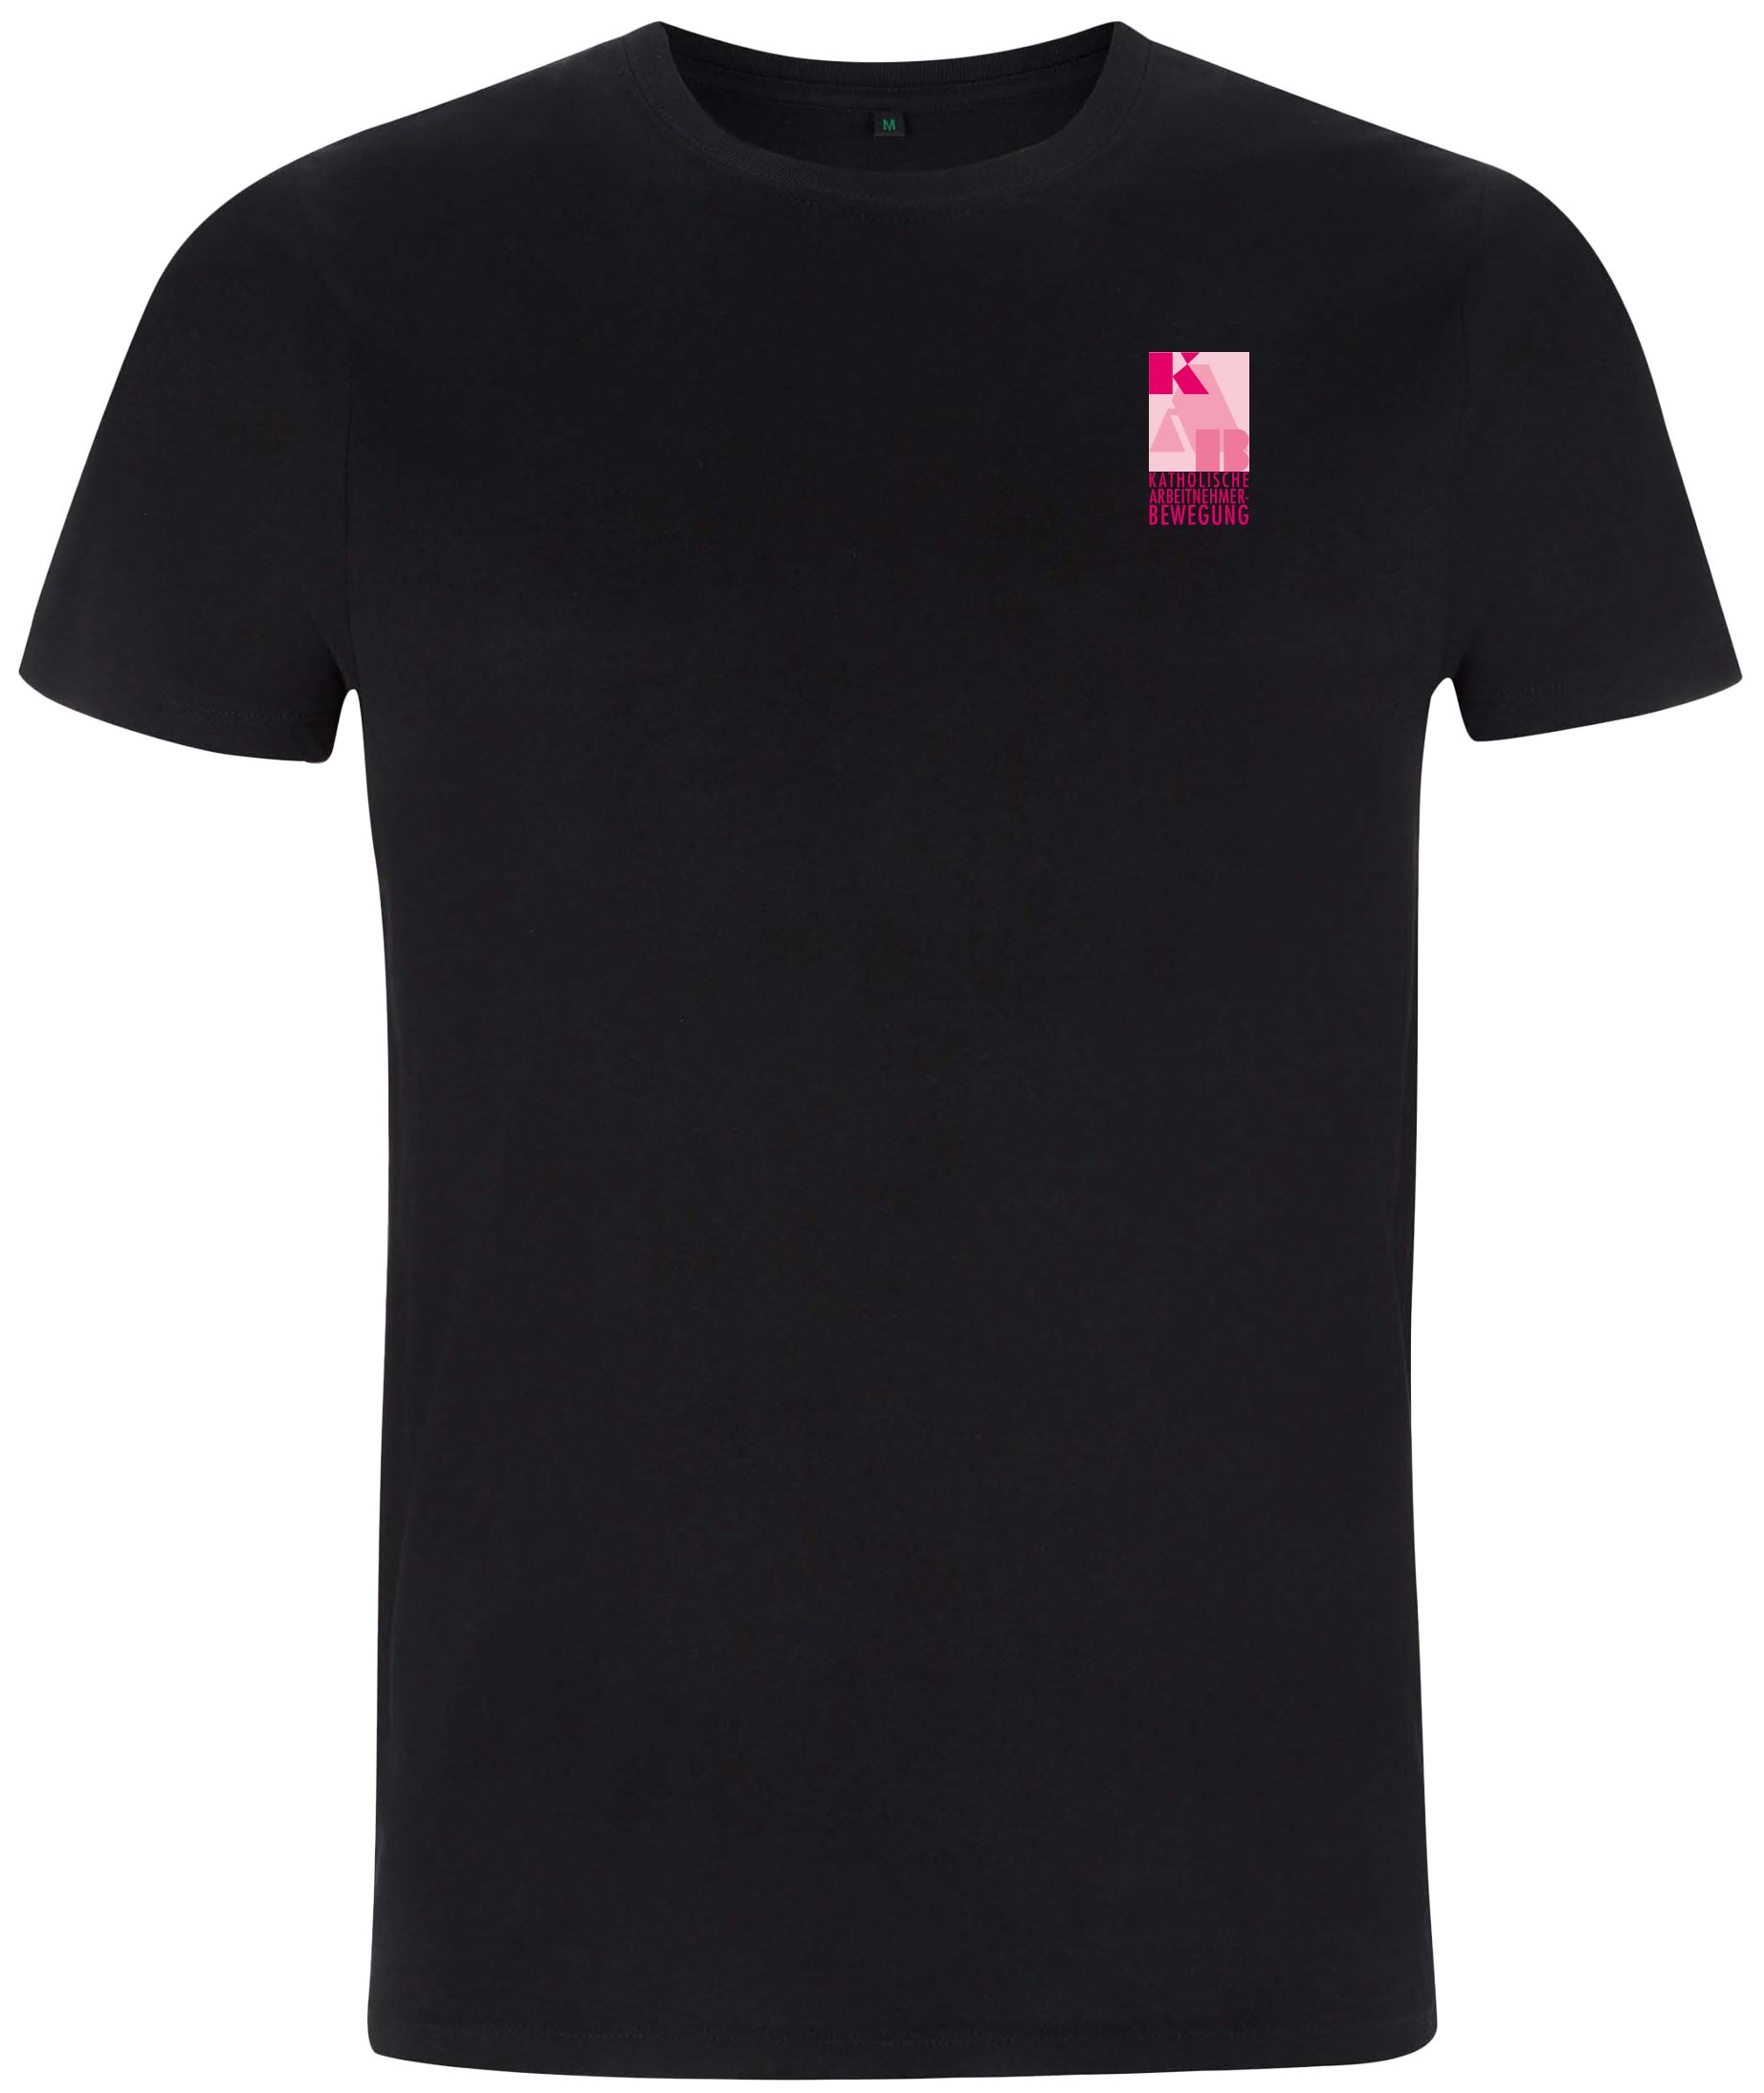 KAB-T-Shirt schwarz MIT KURZER LIEFERZEIT – Gr. XXL